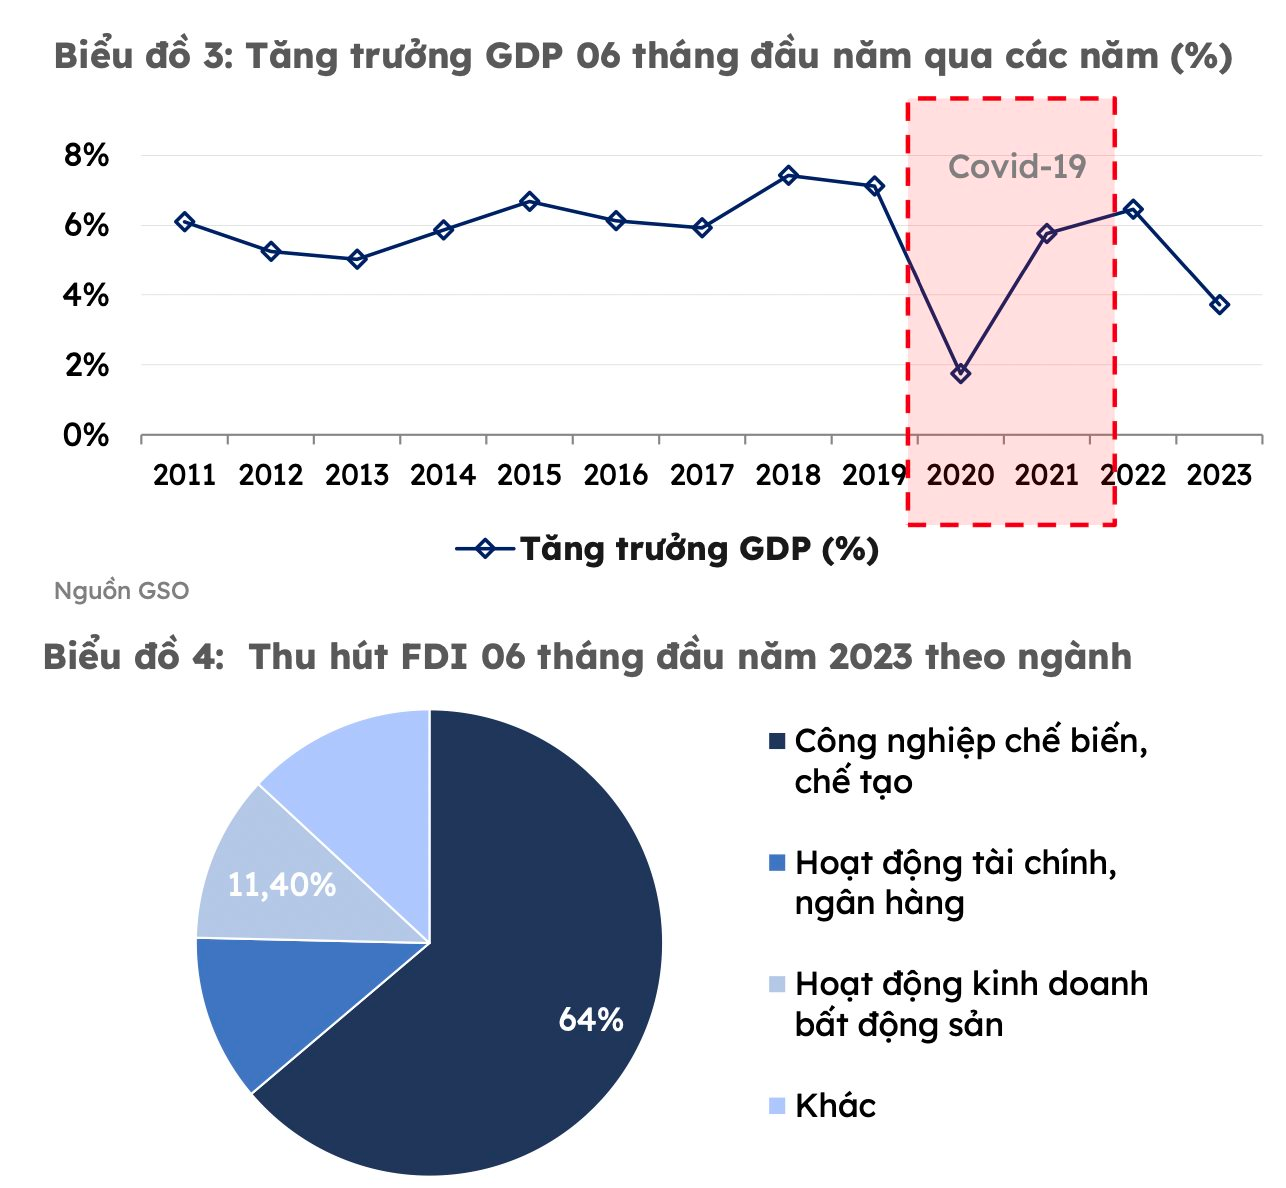 Loạt đại bàng Apple, Foxconn, Samsung tìm cơ hội tại Việt Nam: Chủ các KCN lao vào cuộc đua thu hút FDI - Ảnh 2.